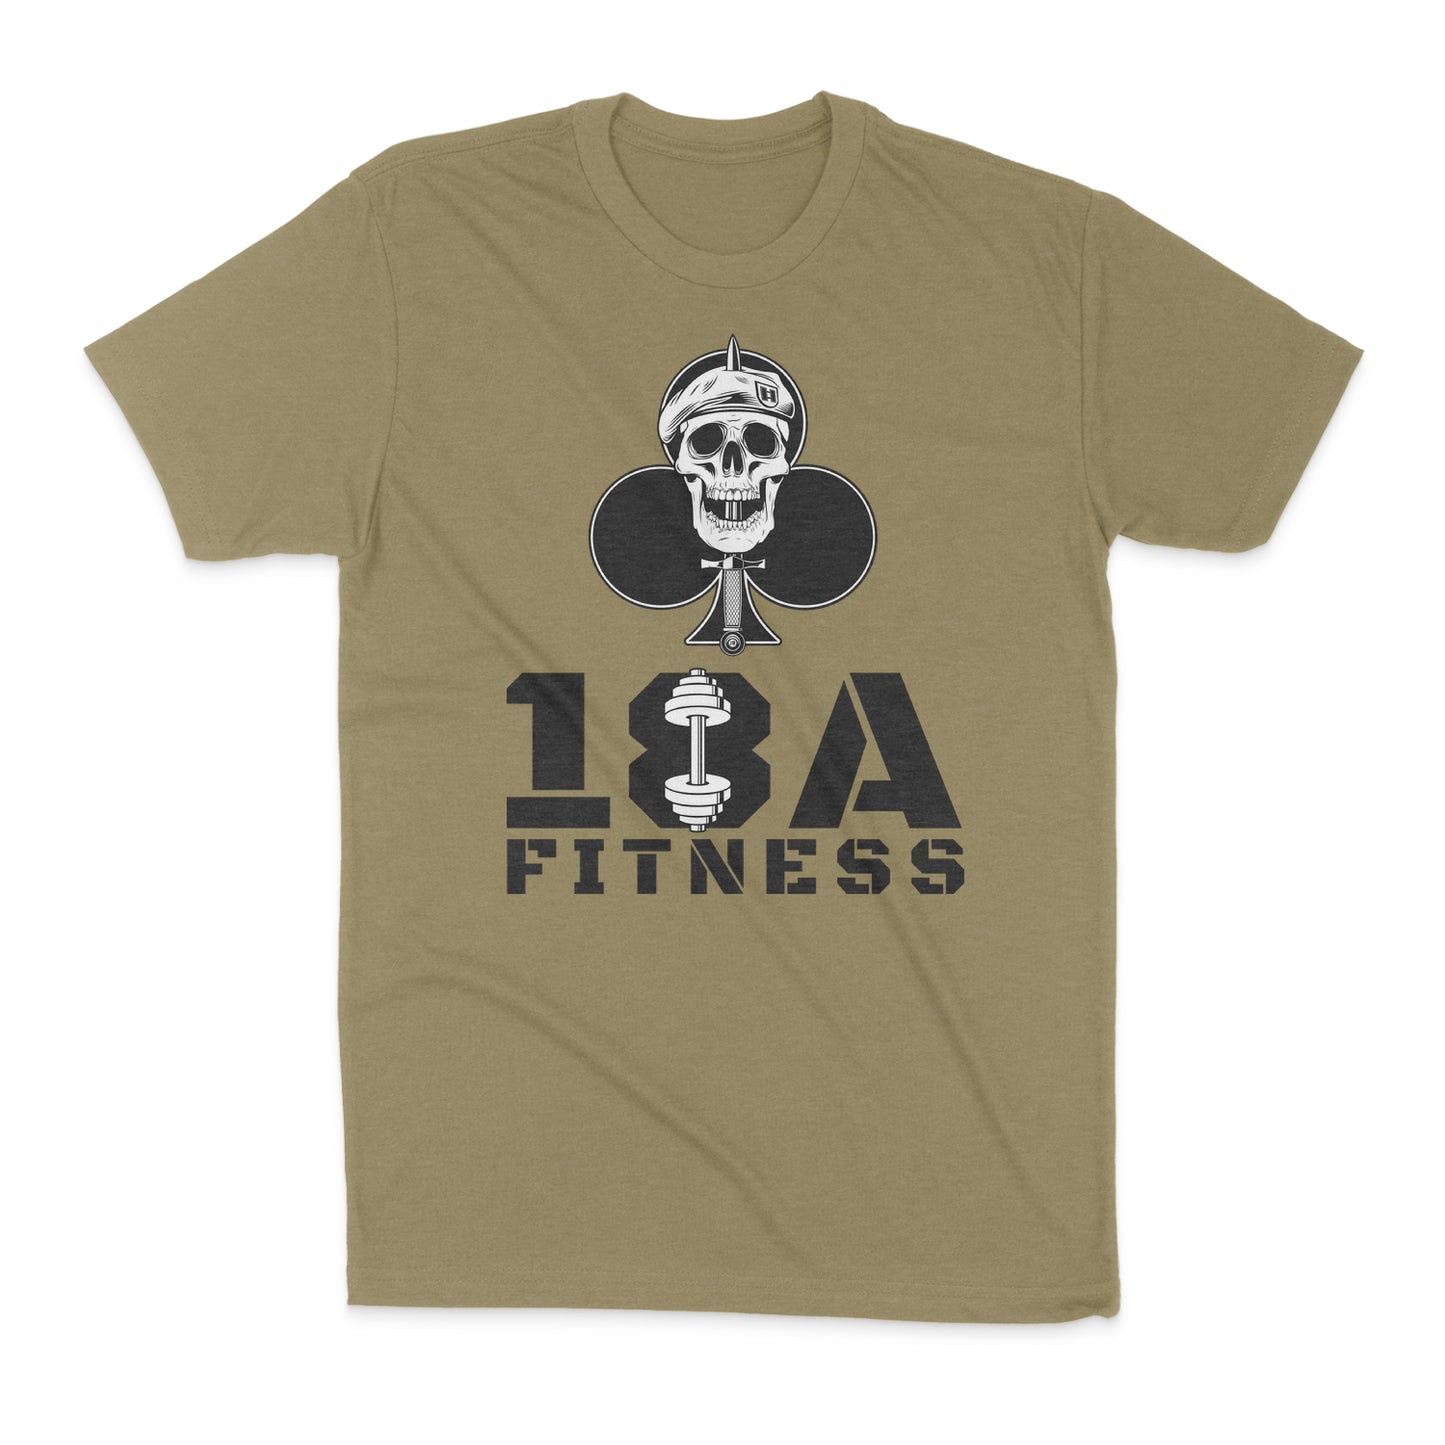 18A Fitness T-Shirt